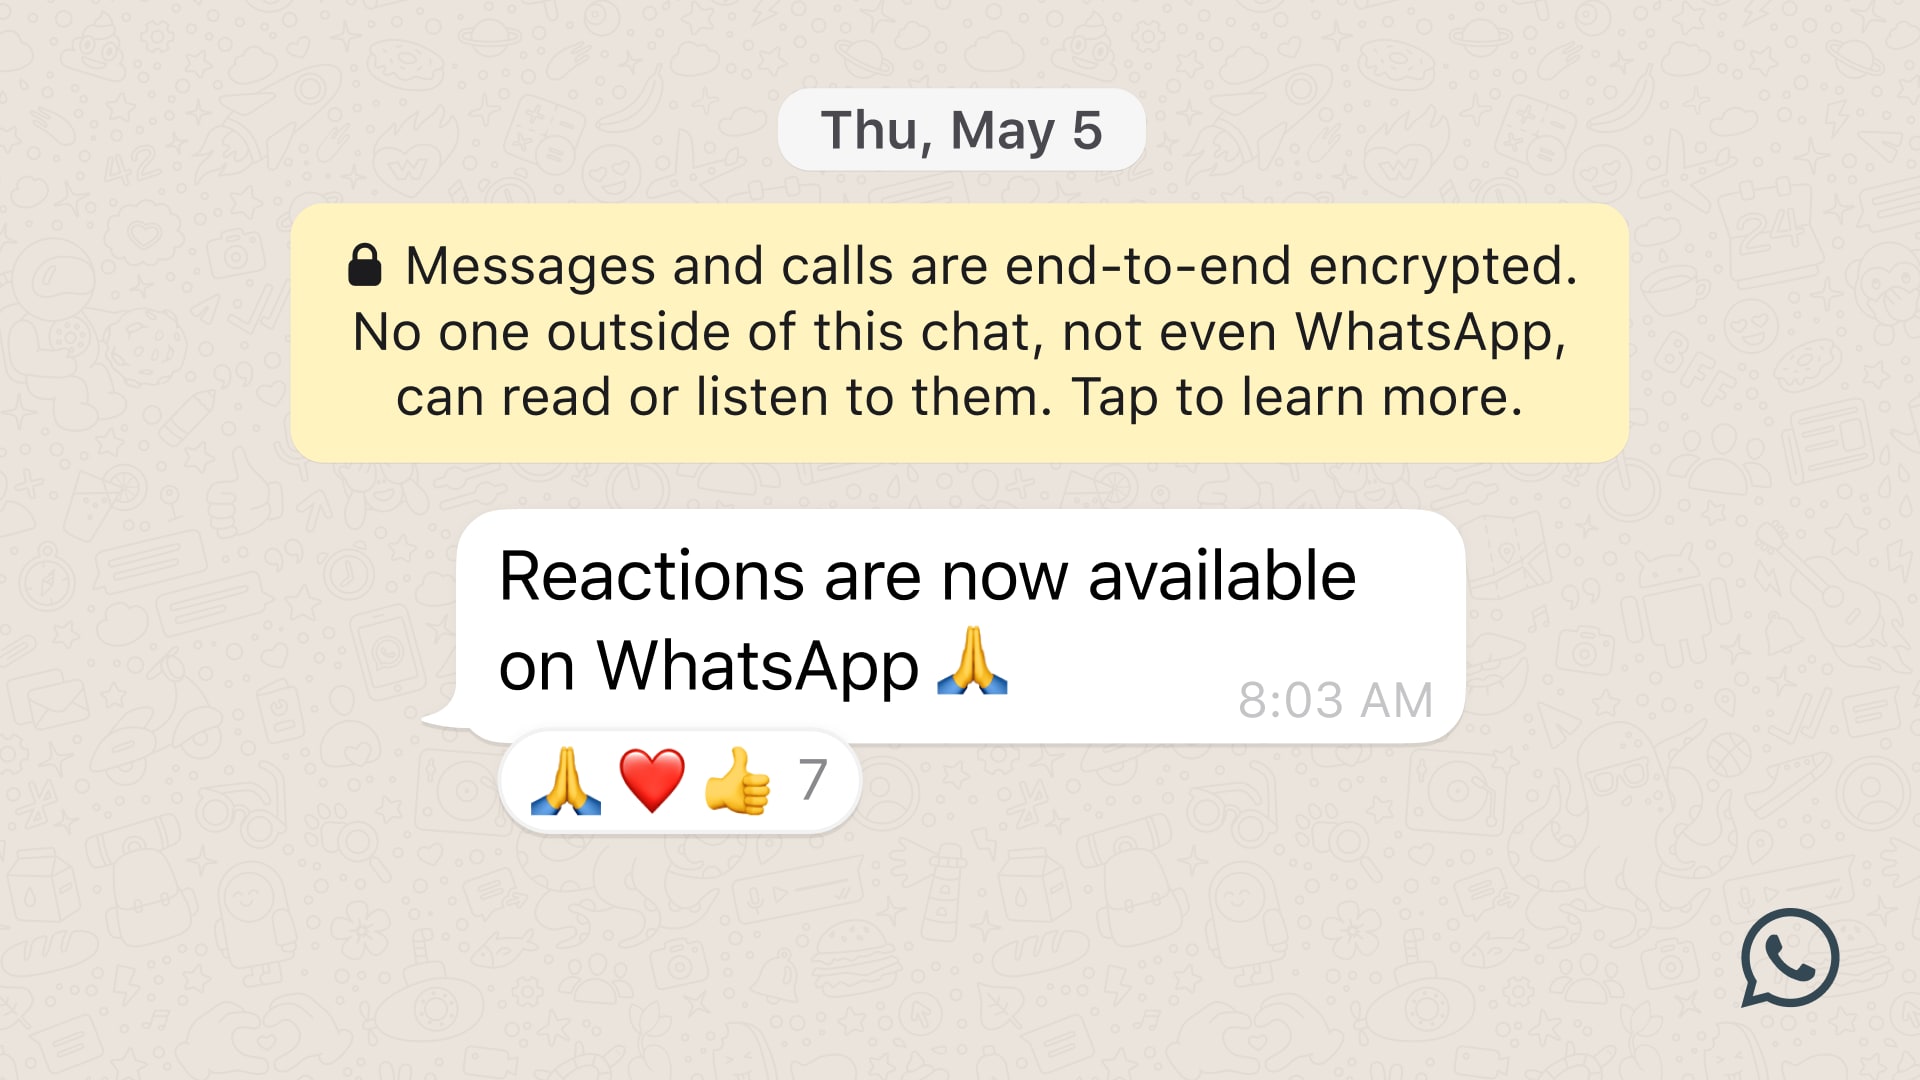 A screenshot showcasing emoji reactions in a WhatsApp chat